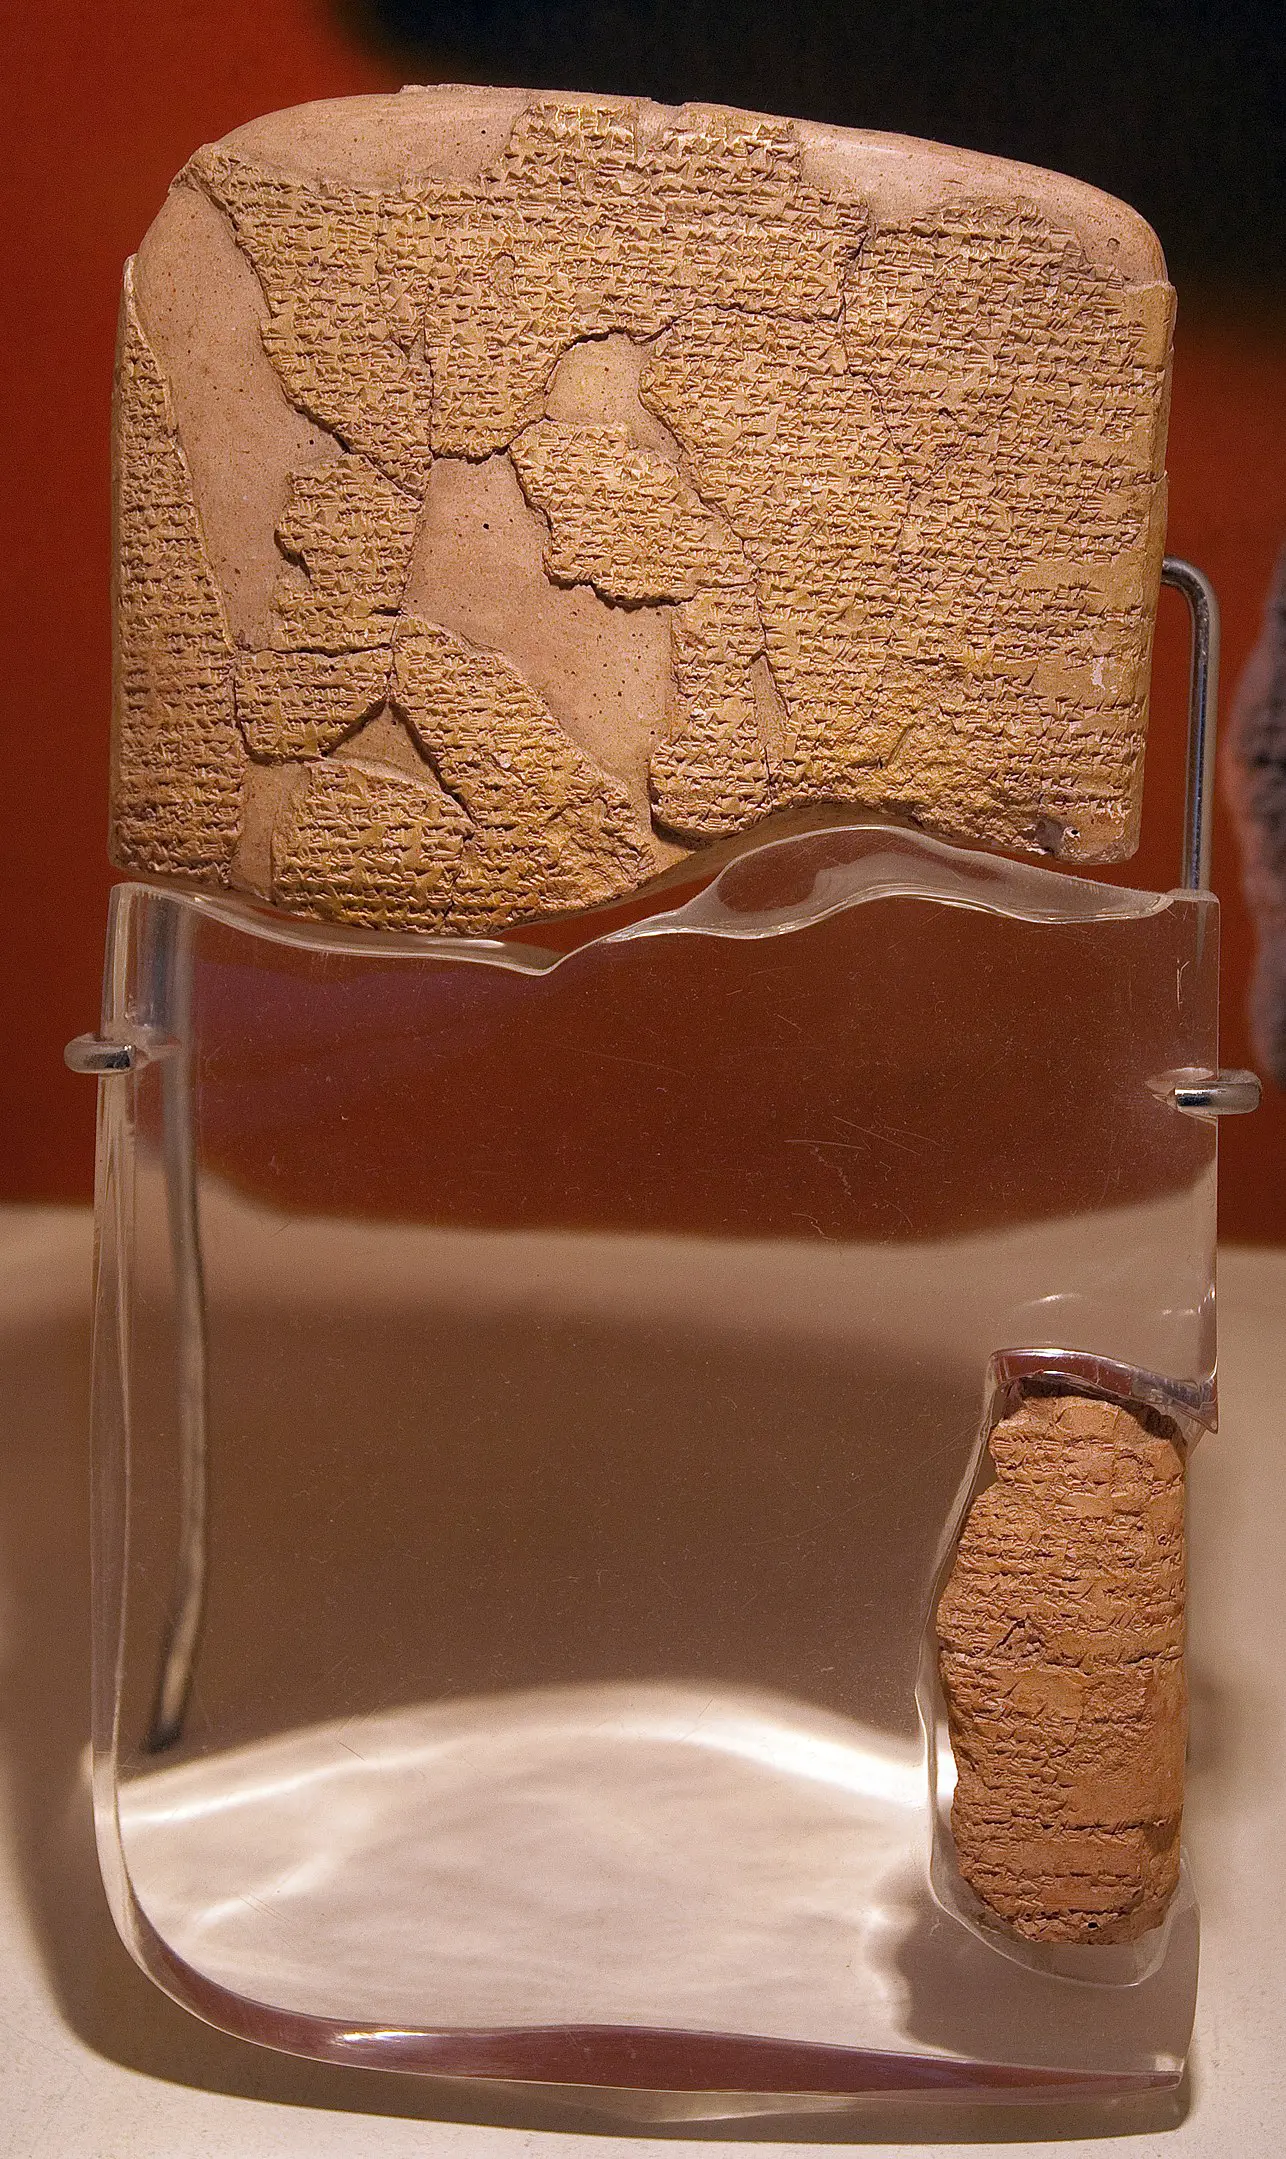 La batalla de Kadesh: cómo el faraón Ramsés II se convirtió en 